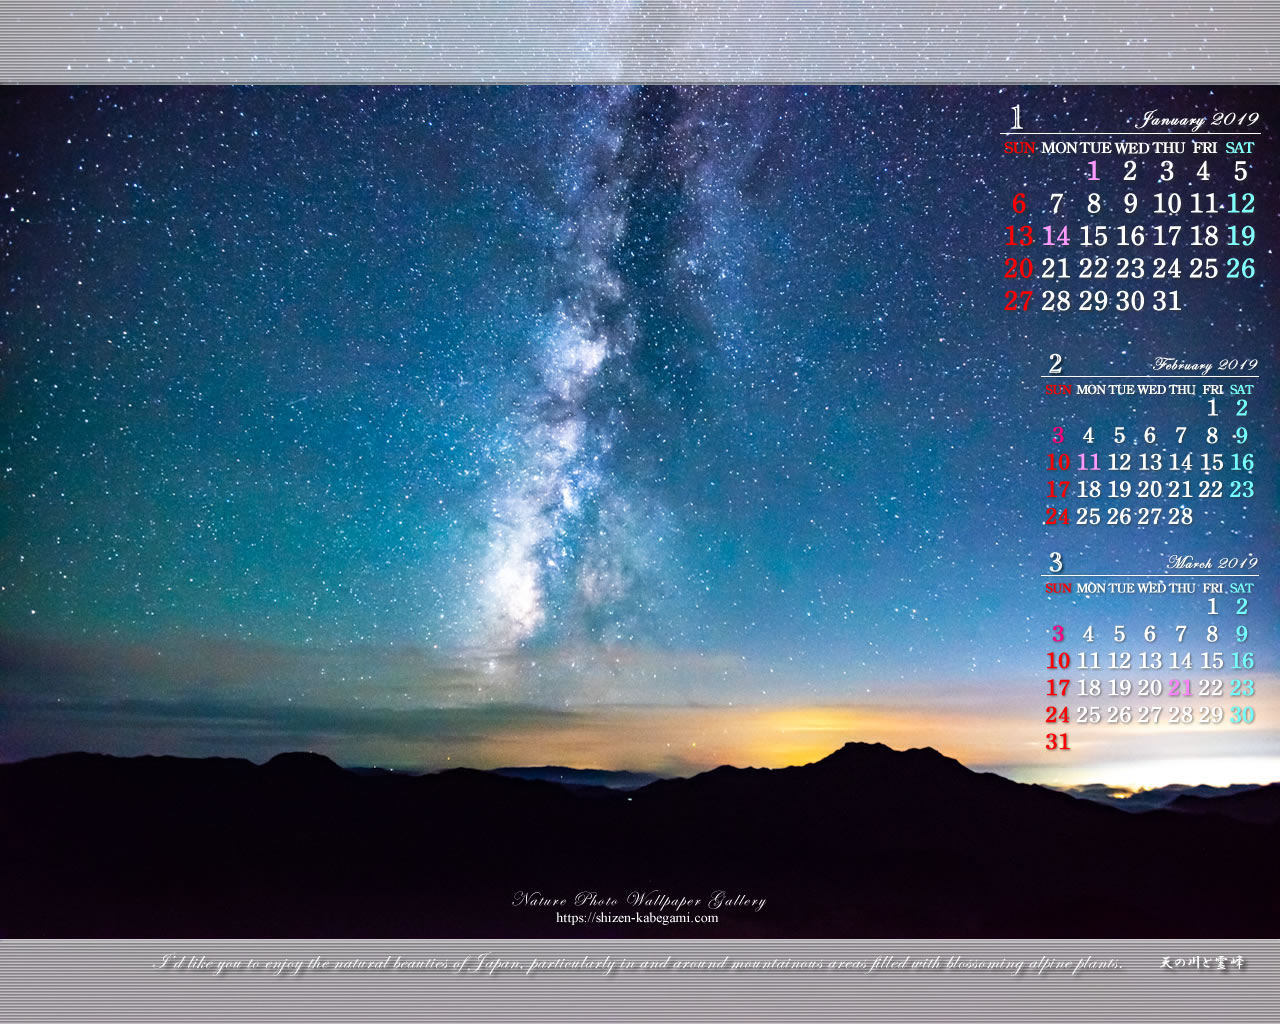 2019年1月カレンダー壁紙 星景写真 霊峰と天の川 ネイチャーフォト